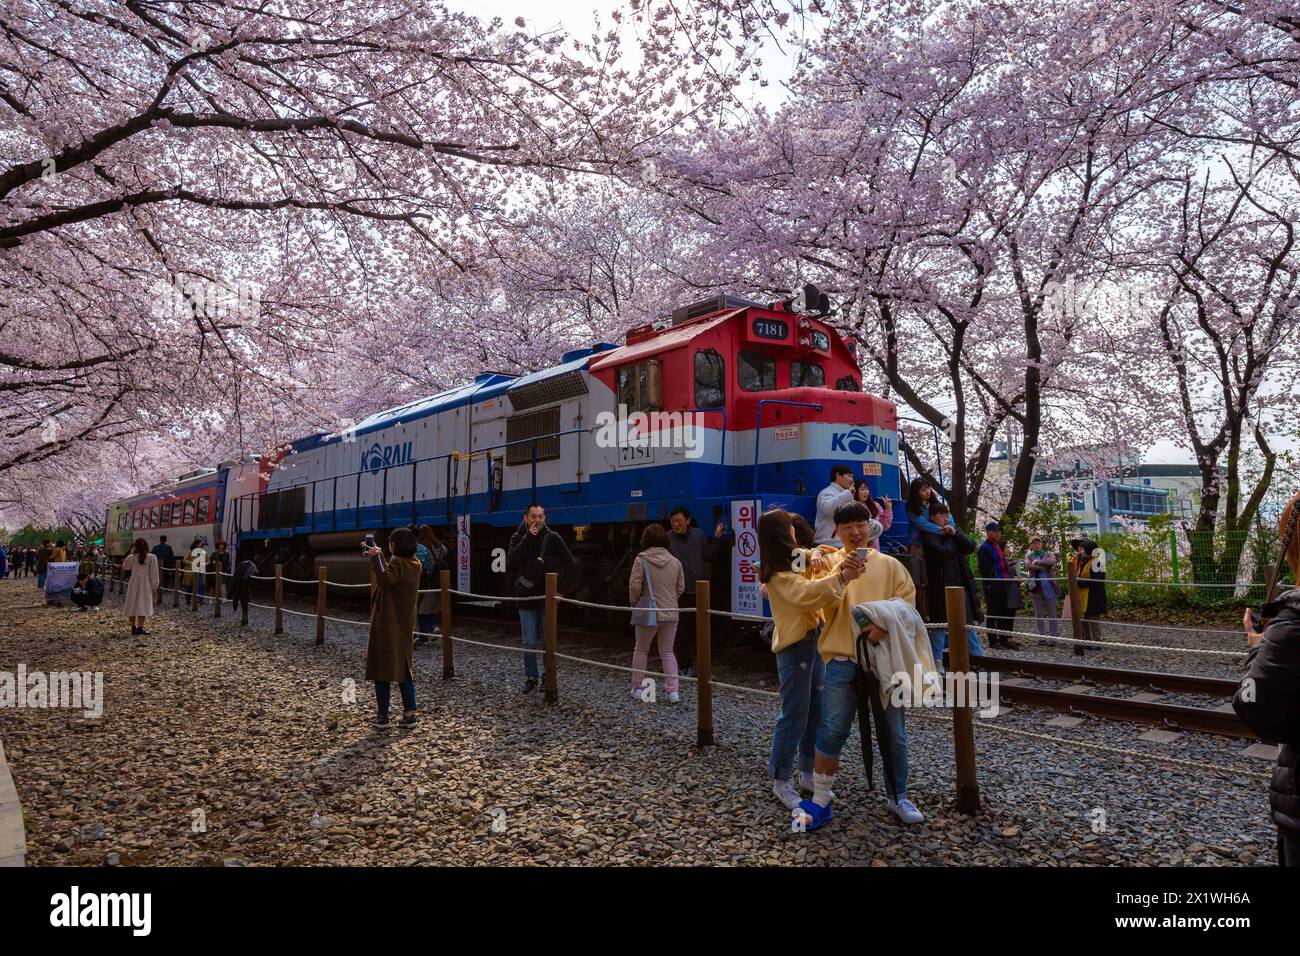 La floraison des cerisiers et le train au printemps en Corée est le lieu d'observation populaire de la floraison des cerisiers, jinhae Corée du Sud. Banque D'Images